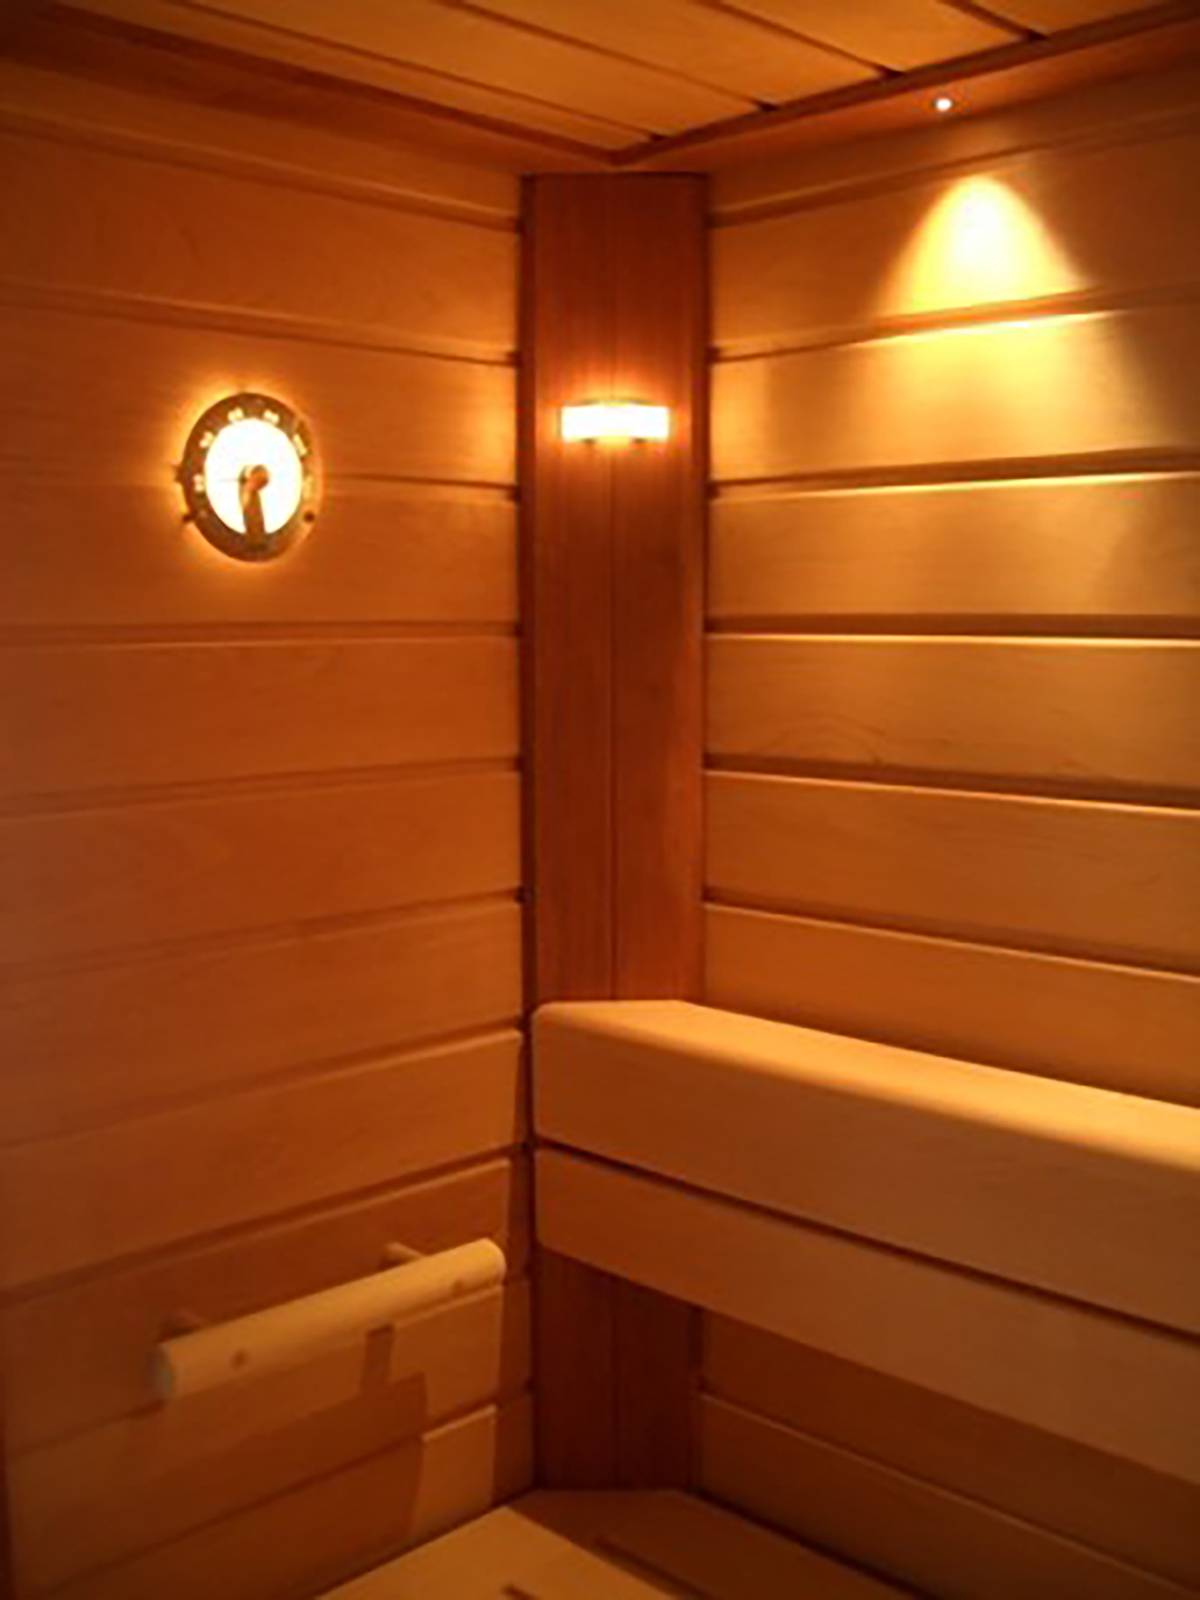 Освещение в бане и фото светильников для парилки, монтаж освещения в бане своими руками